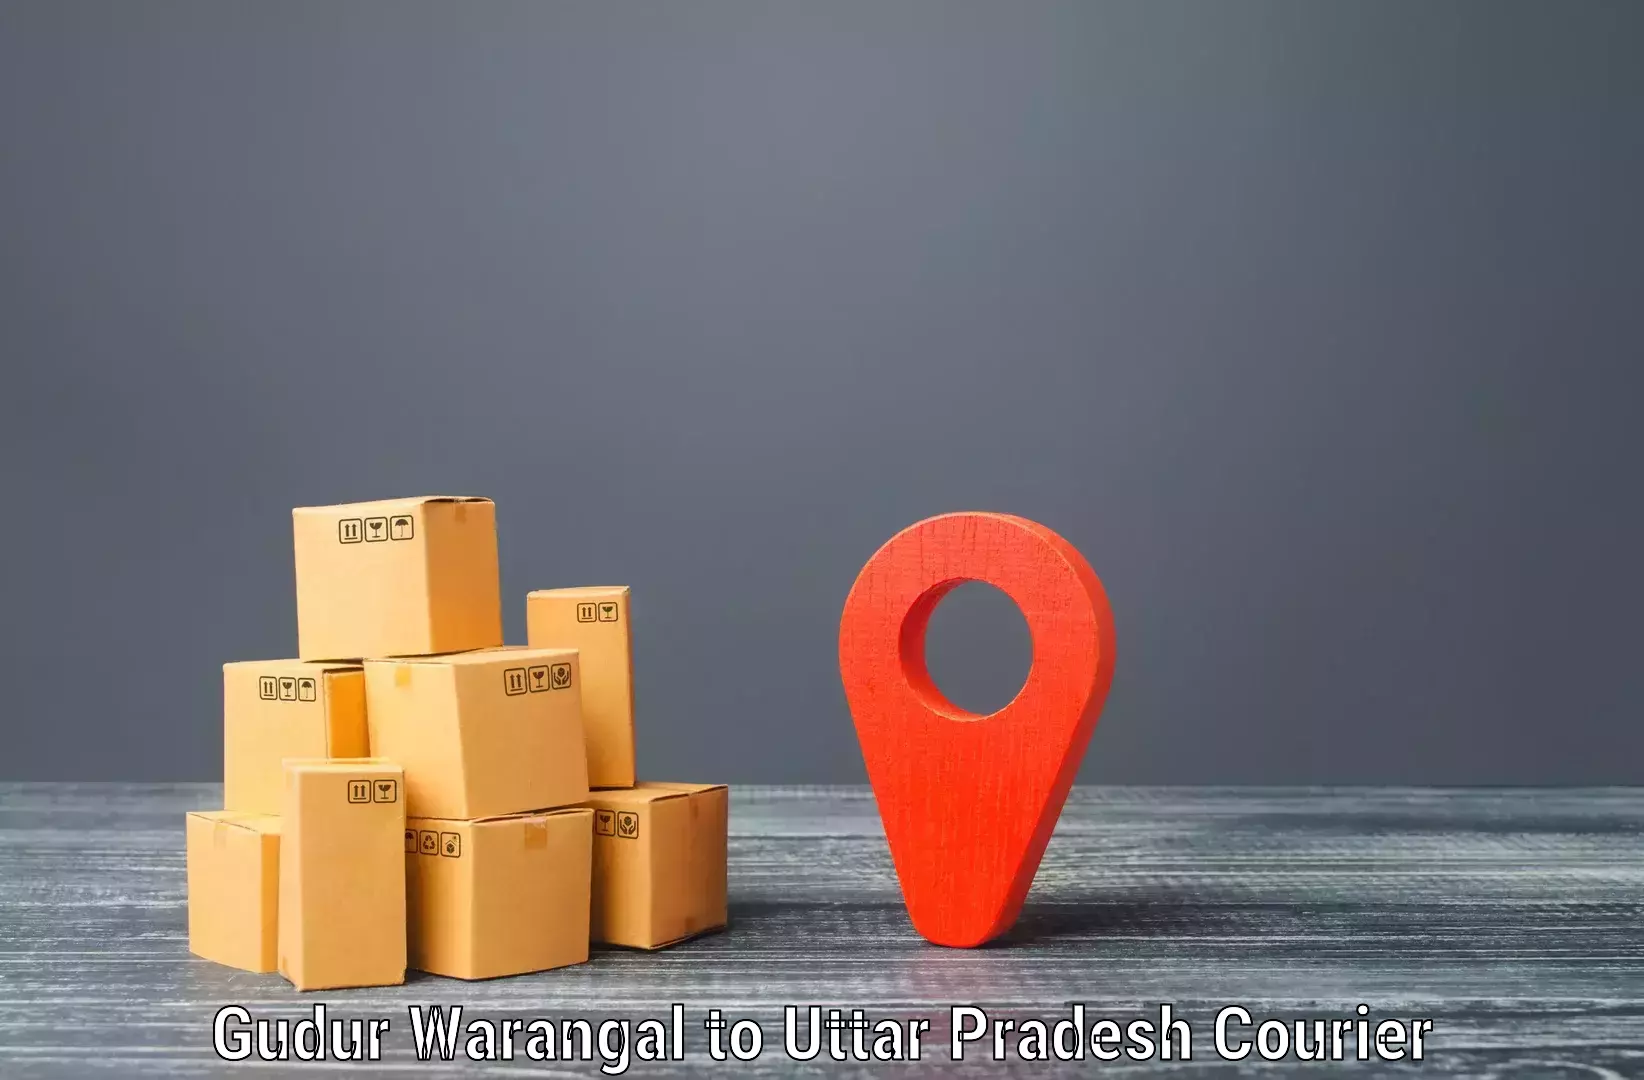 Efficient parcel delivery Gudur Warangal to Chiraiyakot